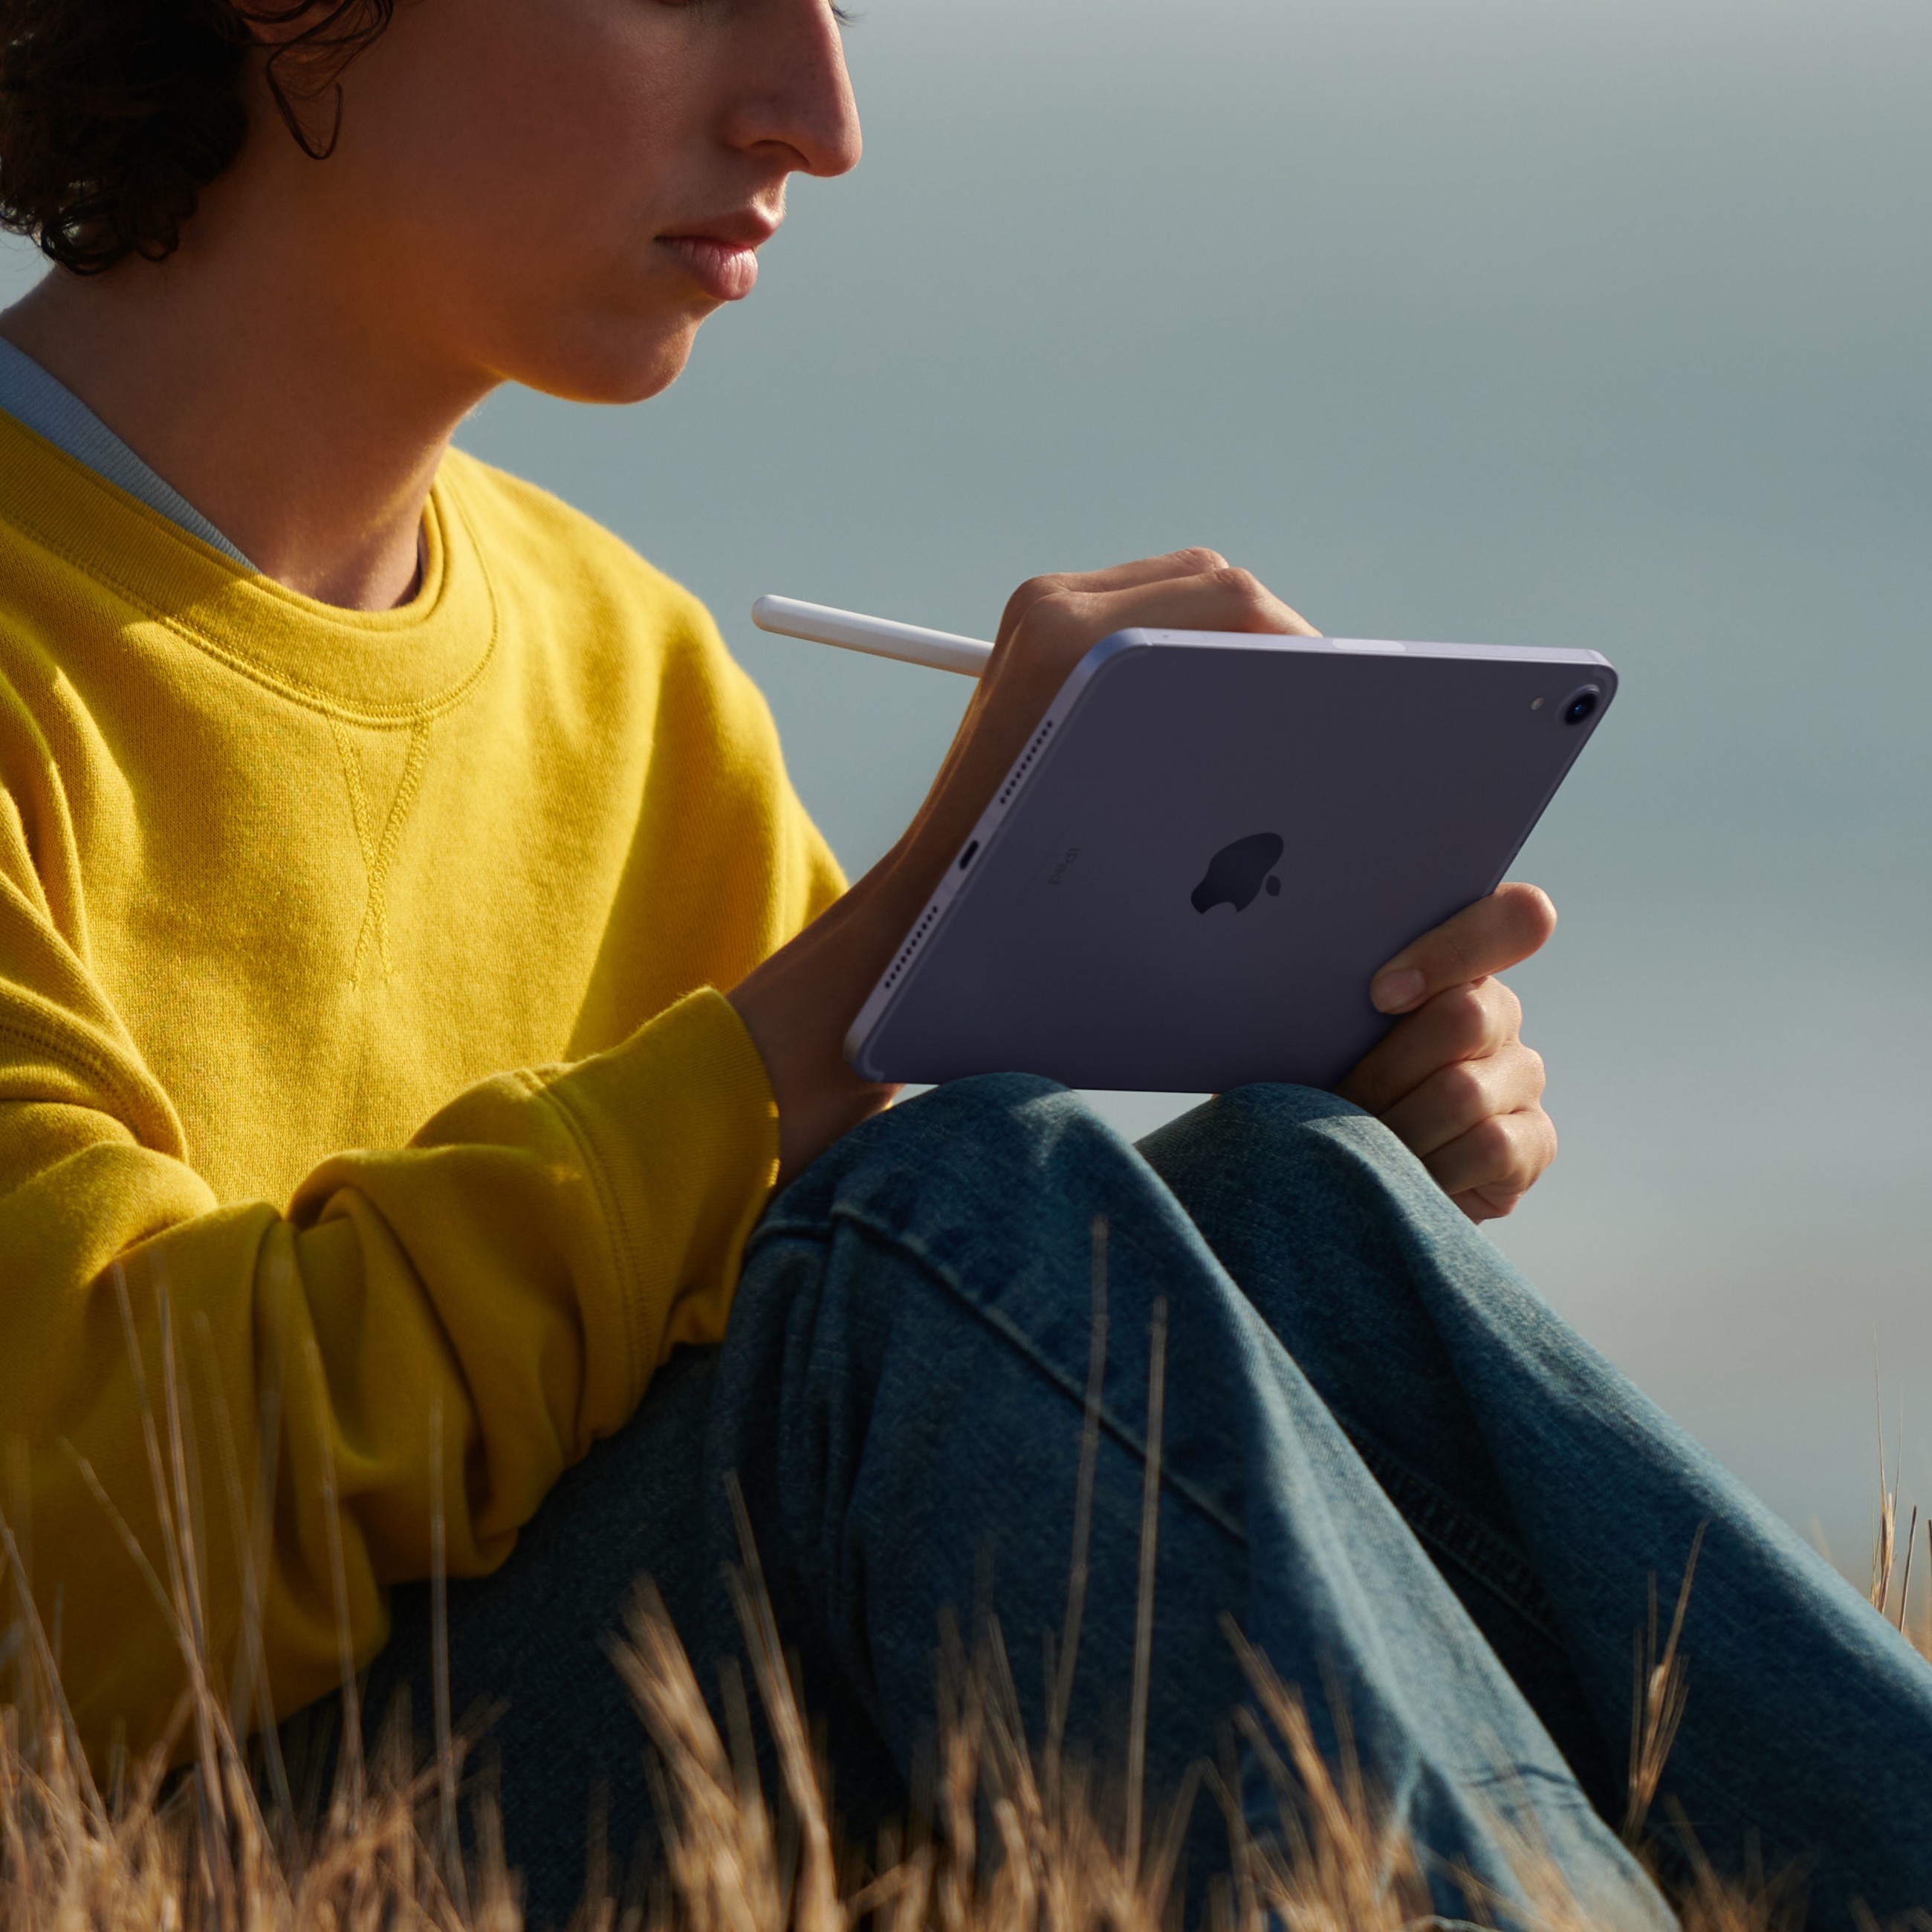 Apple iPad mini 5G TD-LTE & FDD-LTE 256 GB 21,1 cm (8.3 Zoll) Wi-Fi 6 (802.11ax) iPadOS 15 Grau